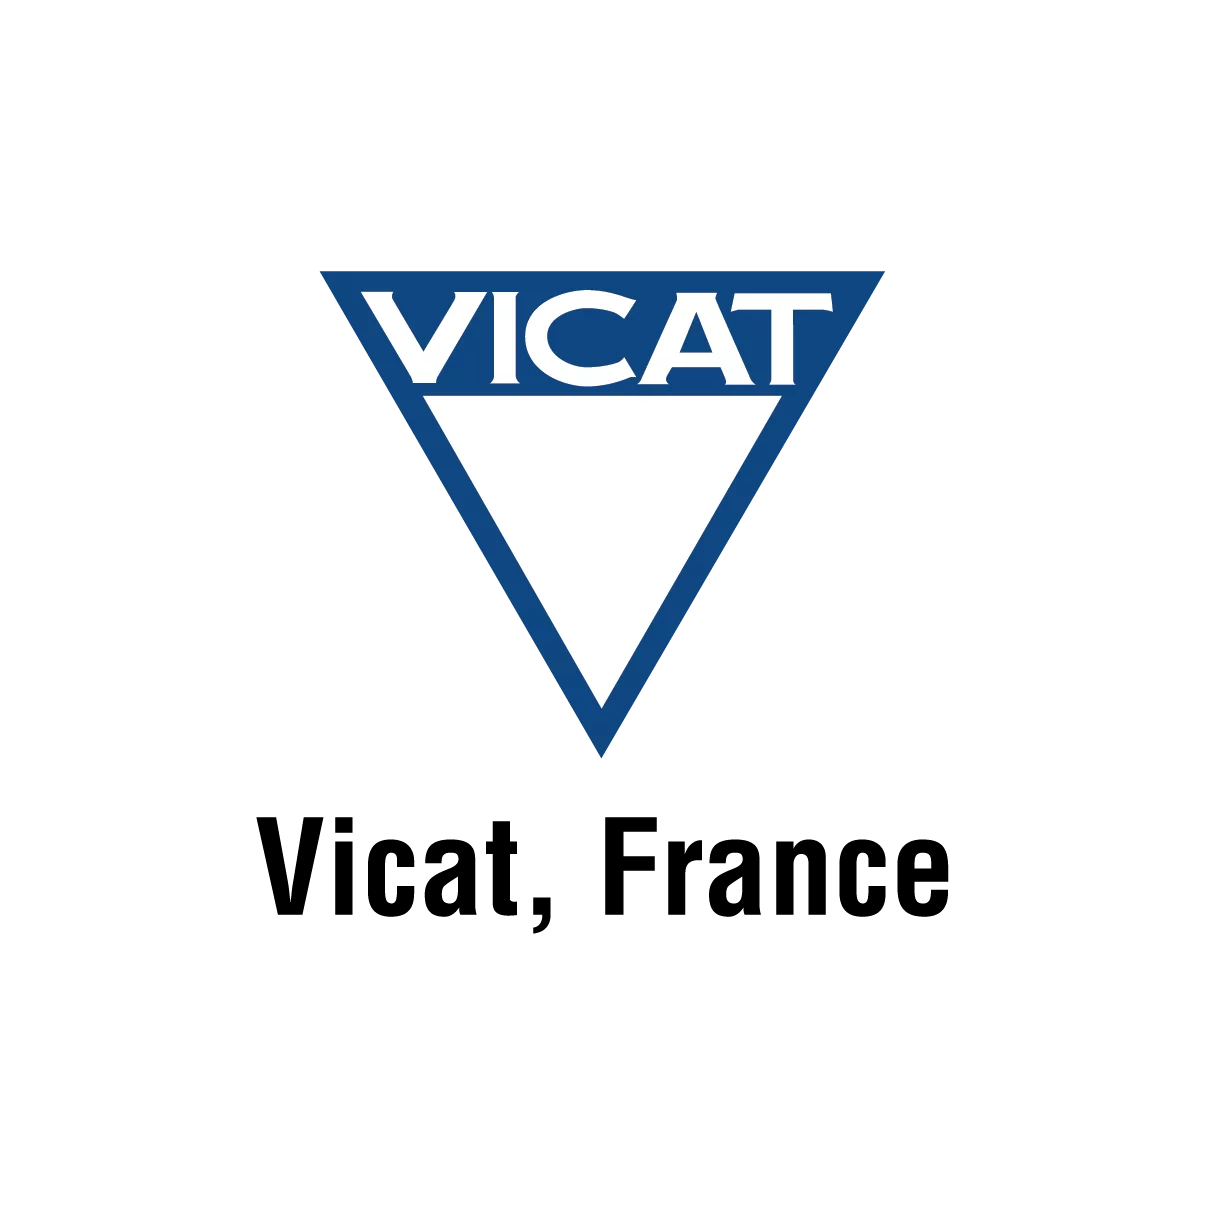 Le Groupe VICAT recherche un responsable d’exploitation transports et services (RETS) – France